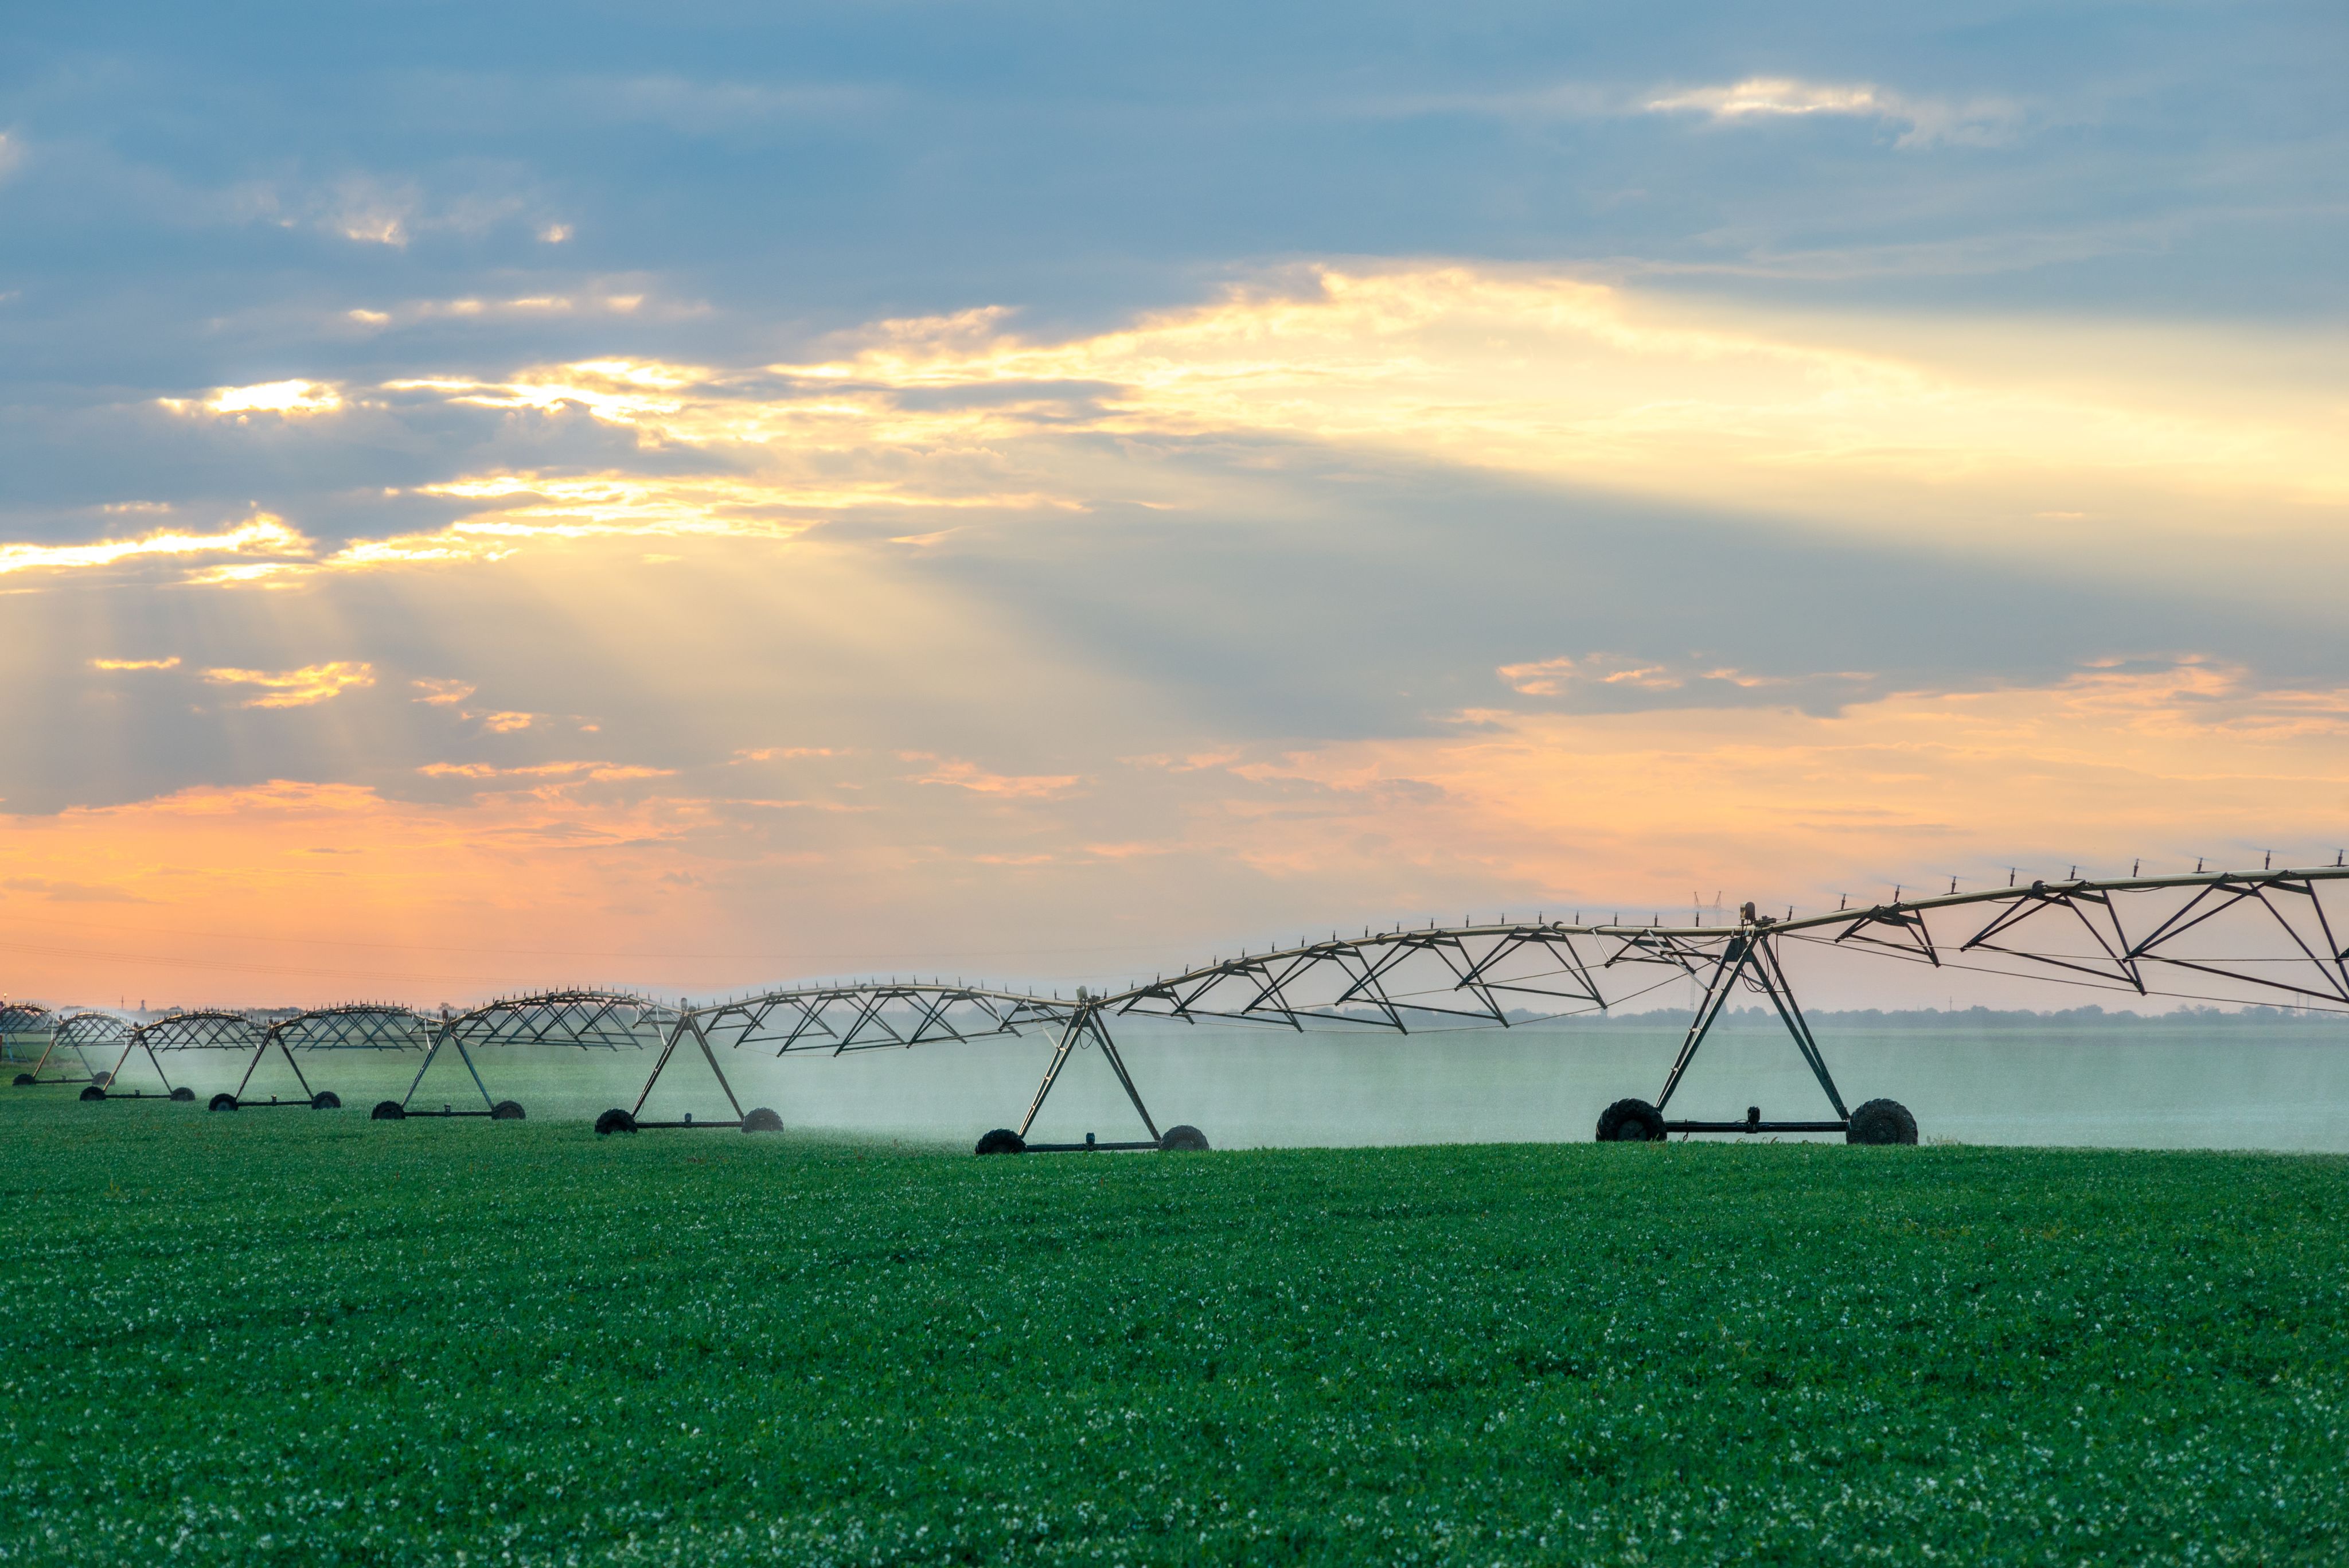 Irrigation sprinklers water fields of soybean in summer.